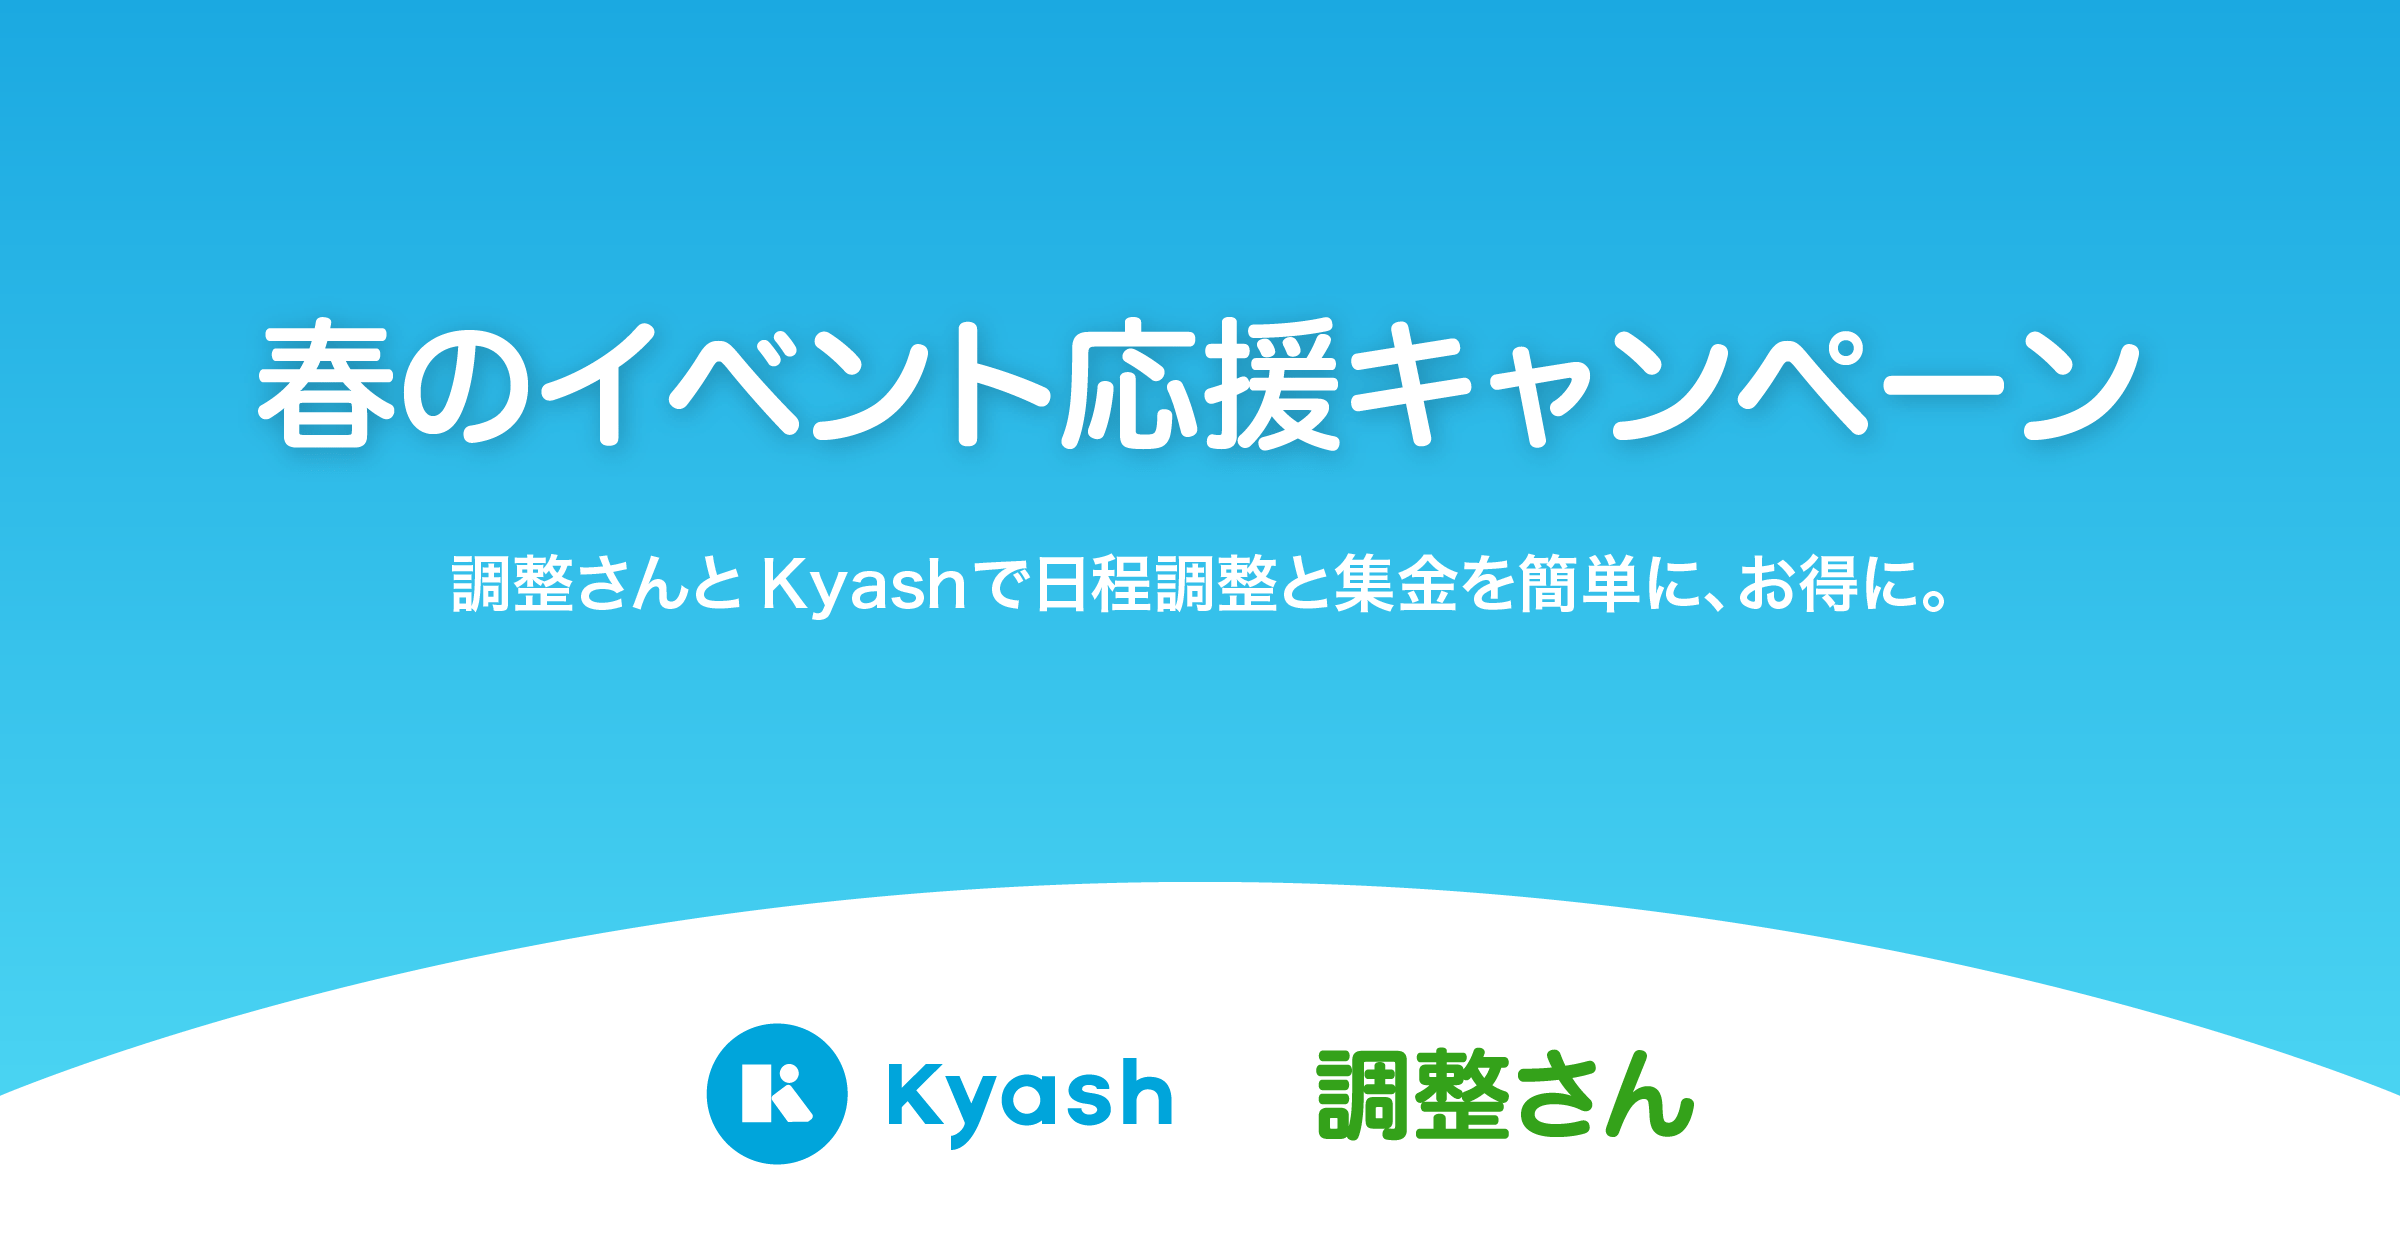 調整さん・Kyash『春のイベント応援キャンペーン』